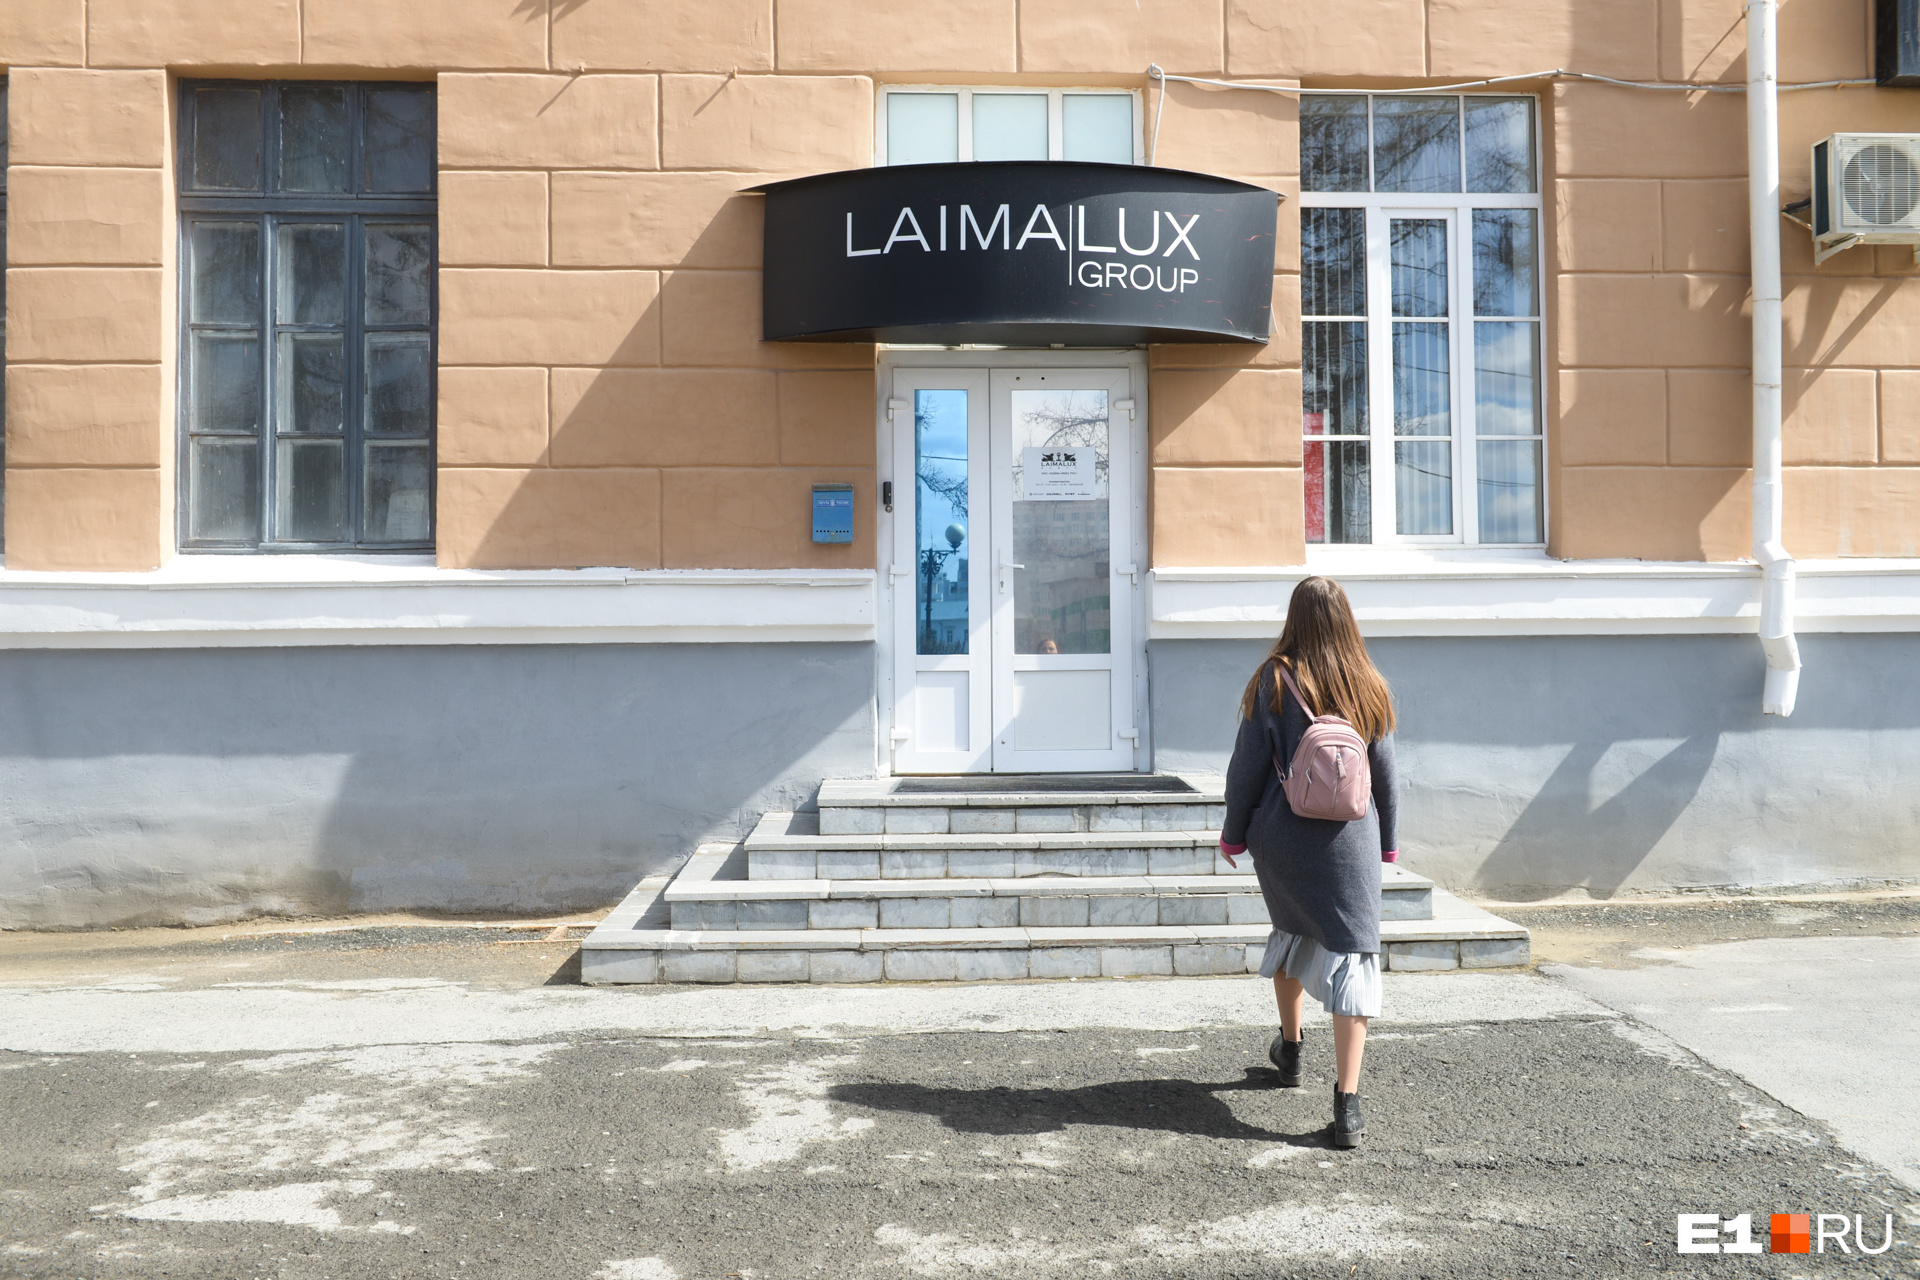 Laimalux Group арендует помещения в более старой части здания